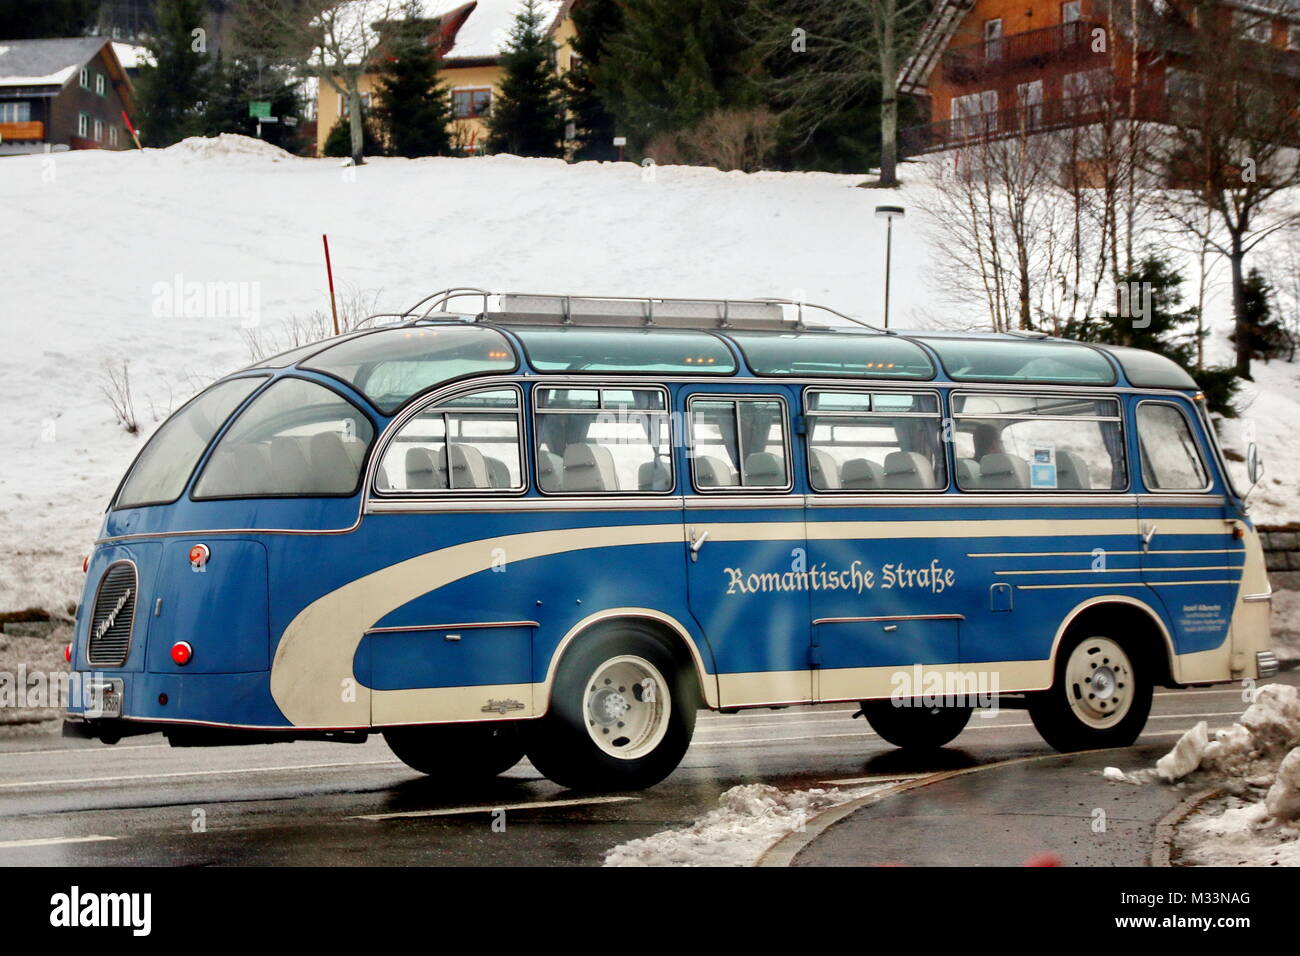 Historischer Reisebus 'Romantische Straße' bei Feldberg-Bärental Banque D'Images